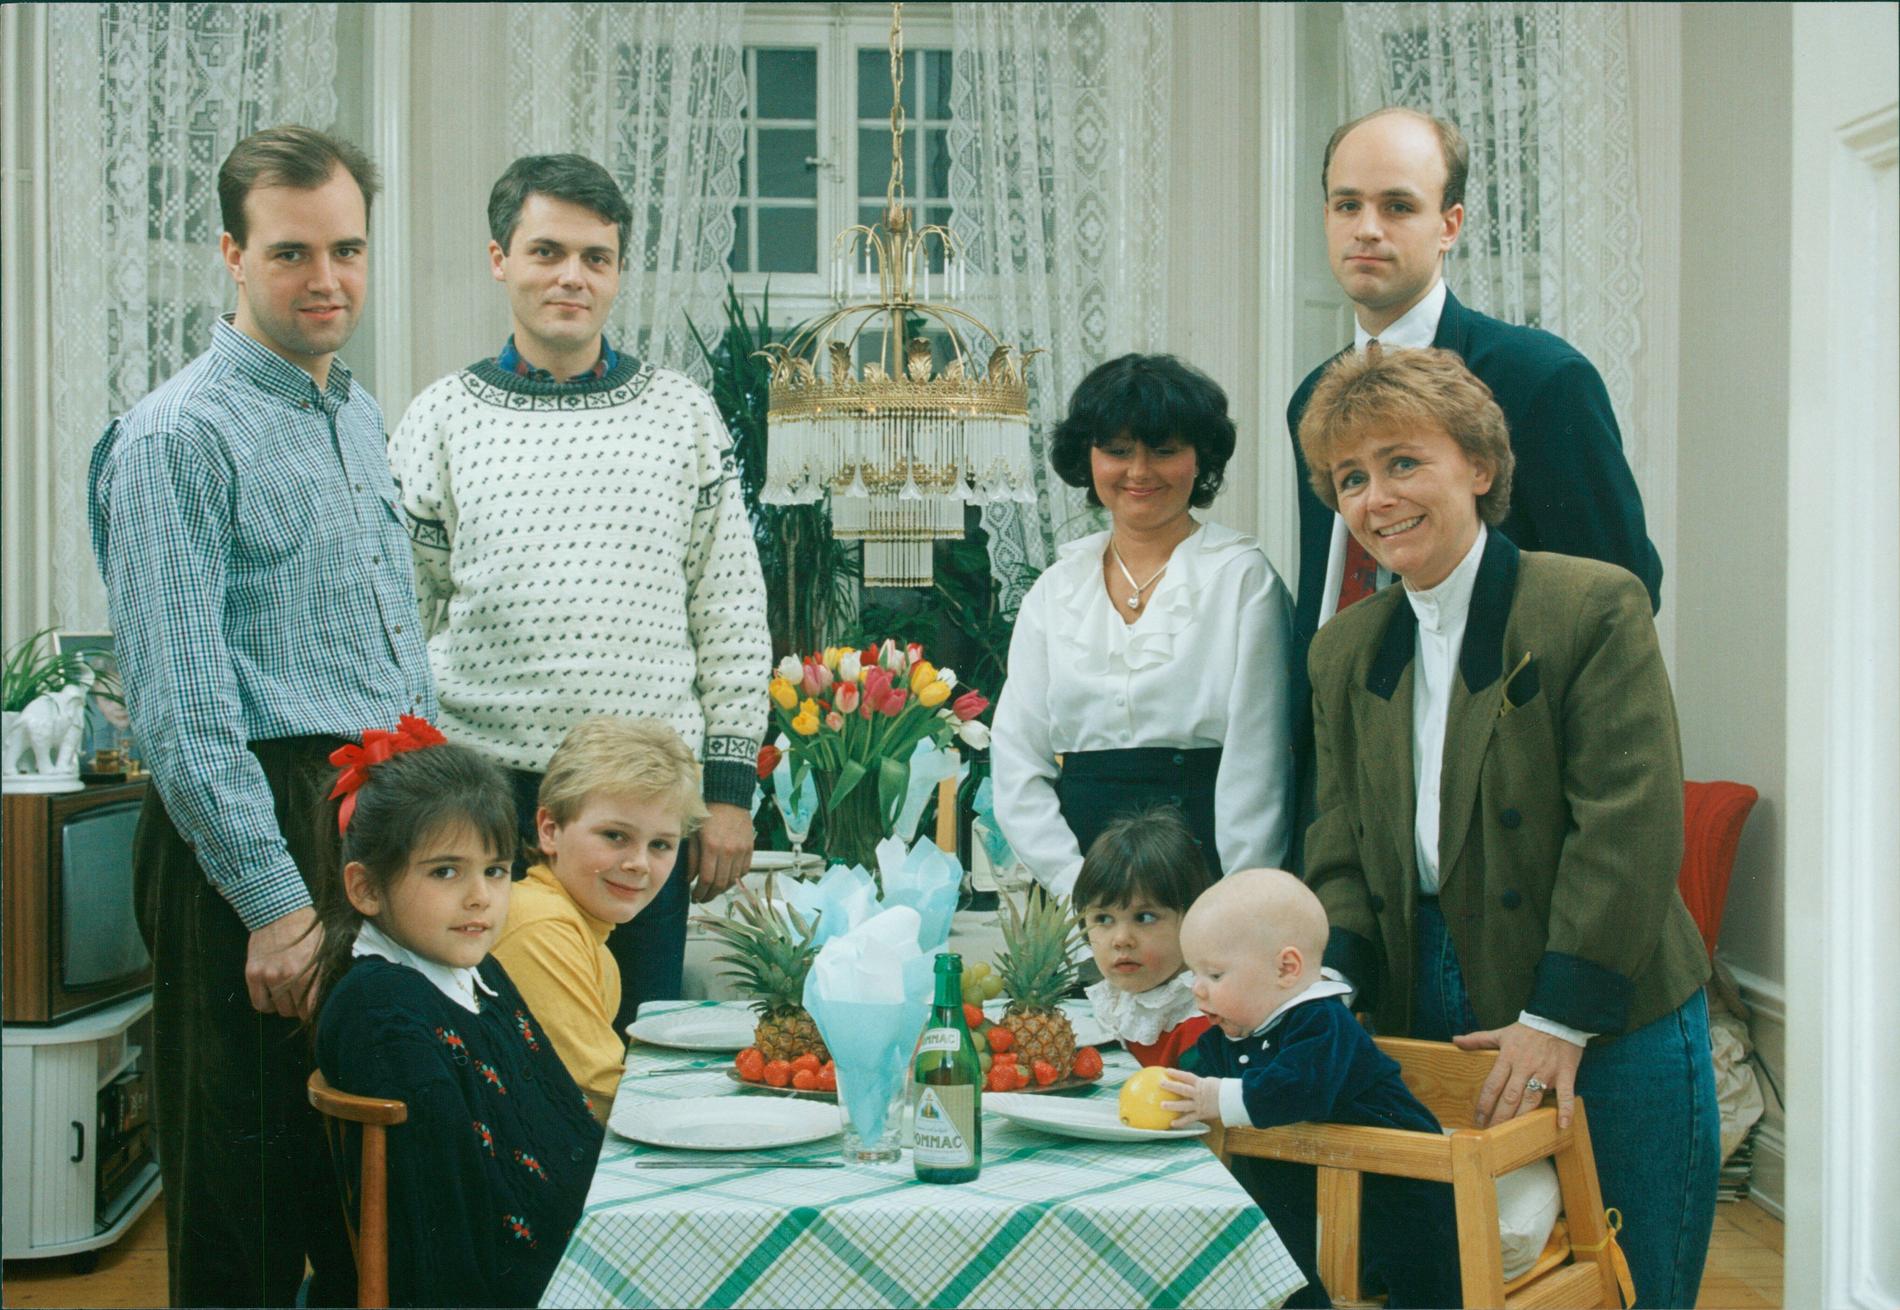 Middag 1992 hos Beatrice Ask till höger, som då var skolminister. Fredrik Reinfeldt var ordförande för MUF och bredvid honom står Odd Eiken, som tog fram friskolereformen på utbildningsdeprtementet. 